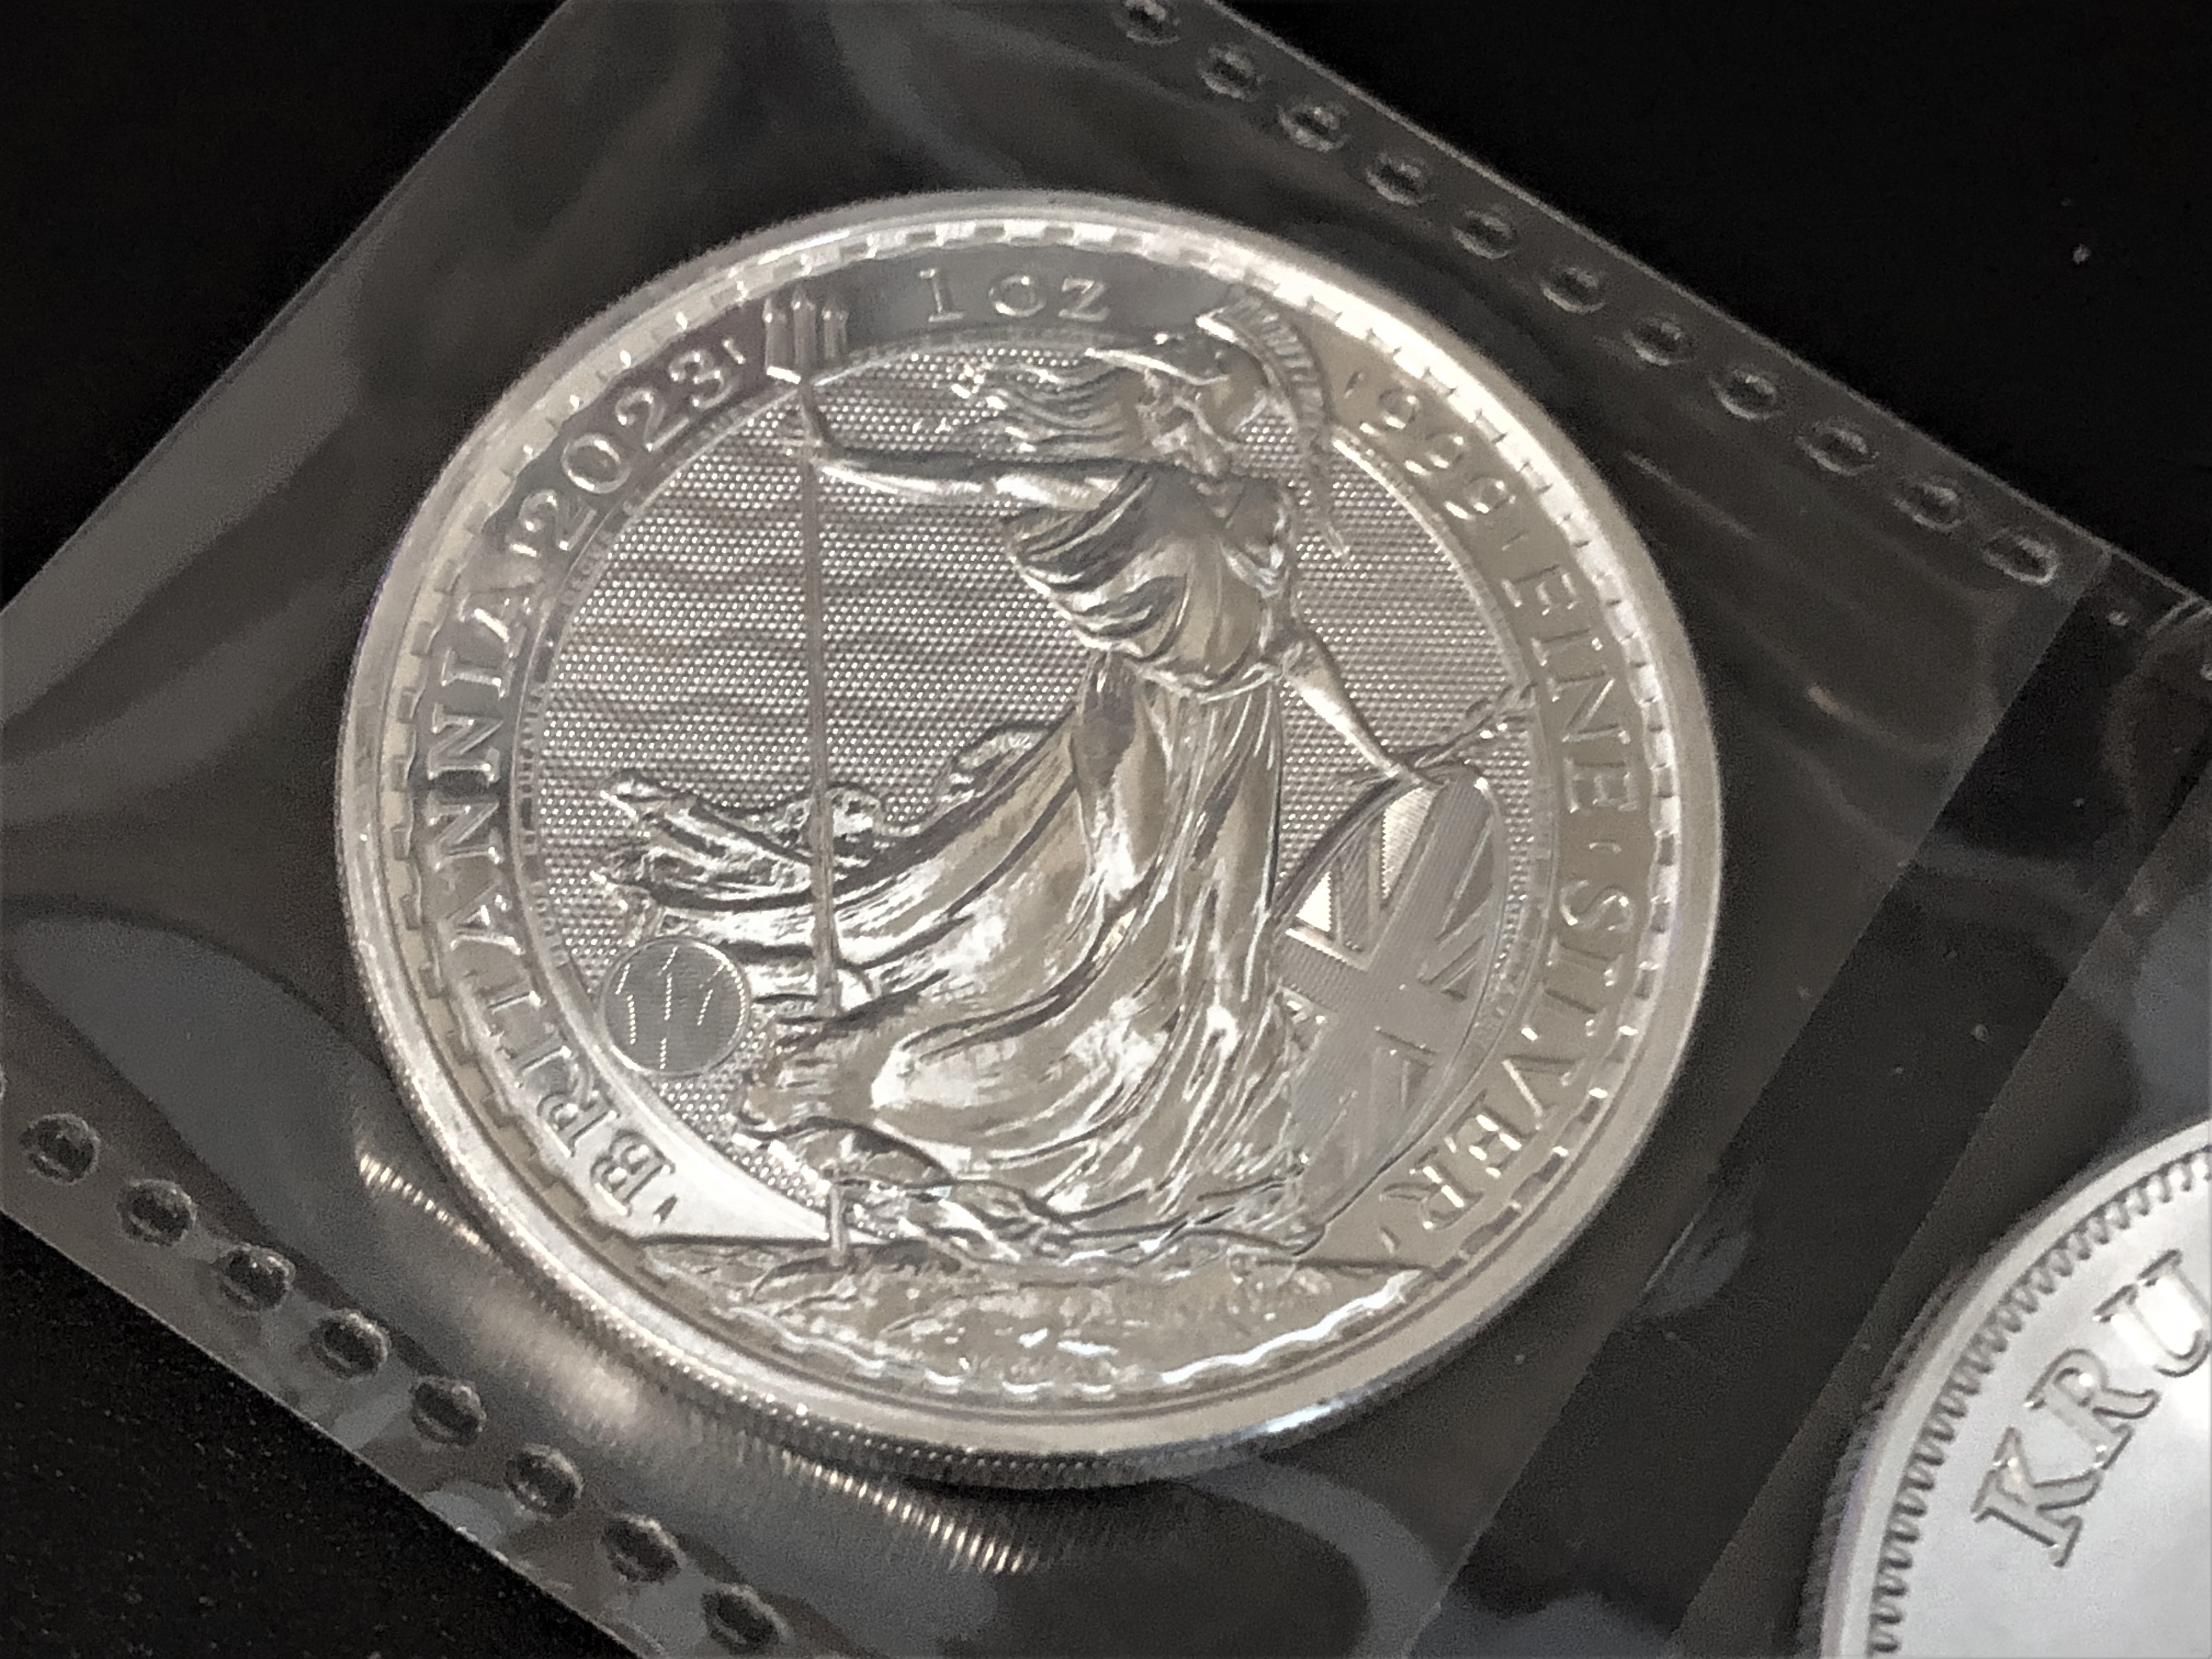 @silversaver888/2023-silver-britannia-coin-type